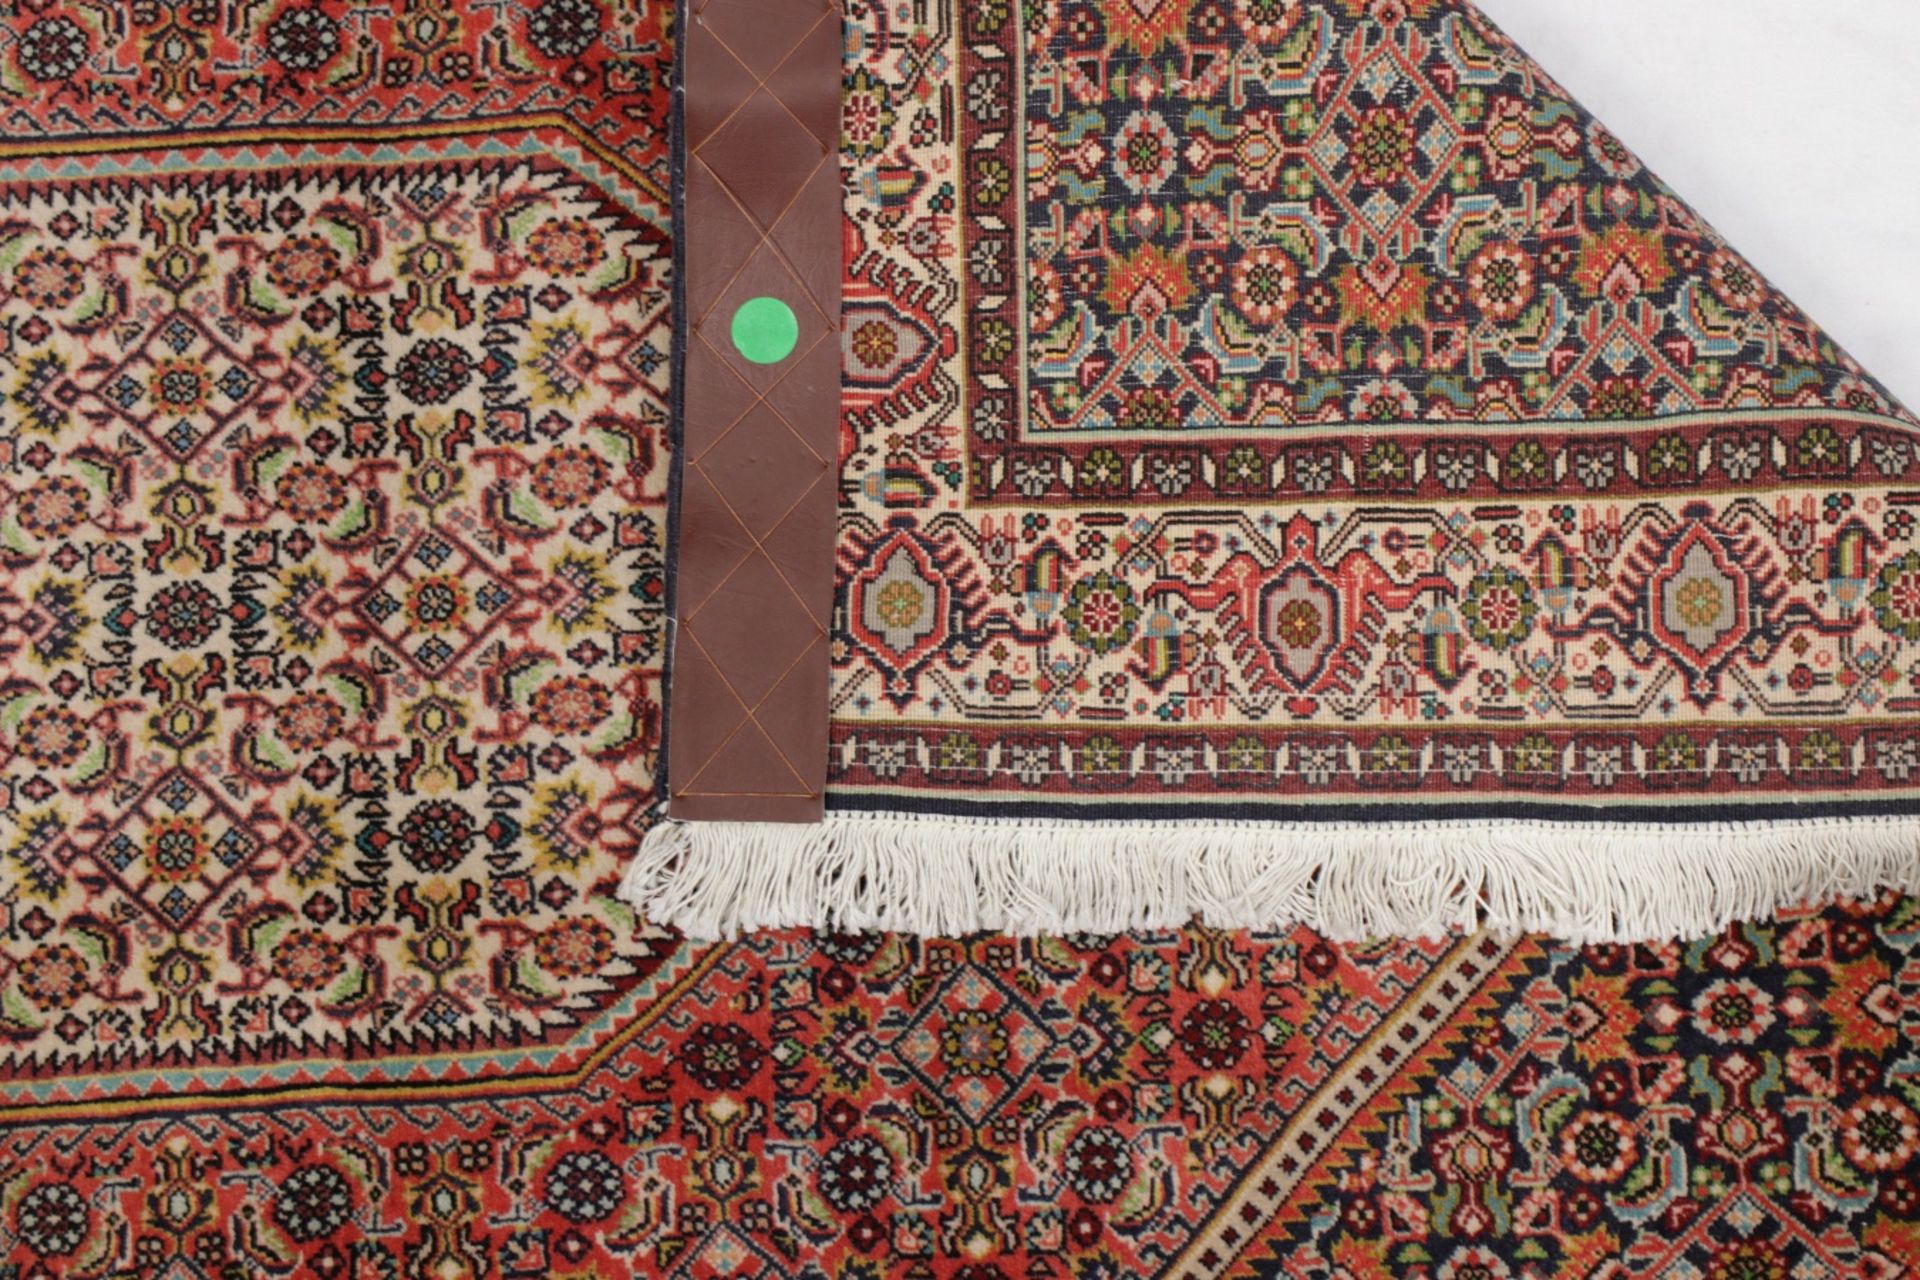 Schöner Orient Teppich 1,65 x 1,15m - Bild 4 aus 4